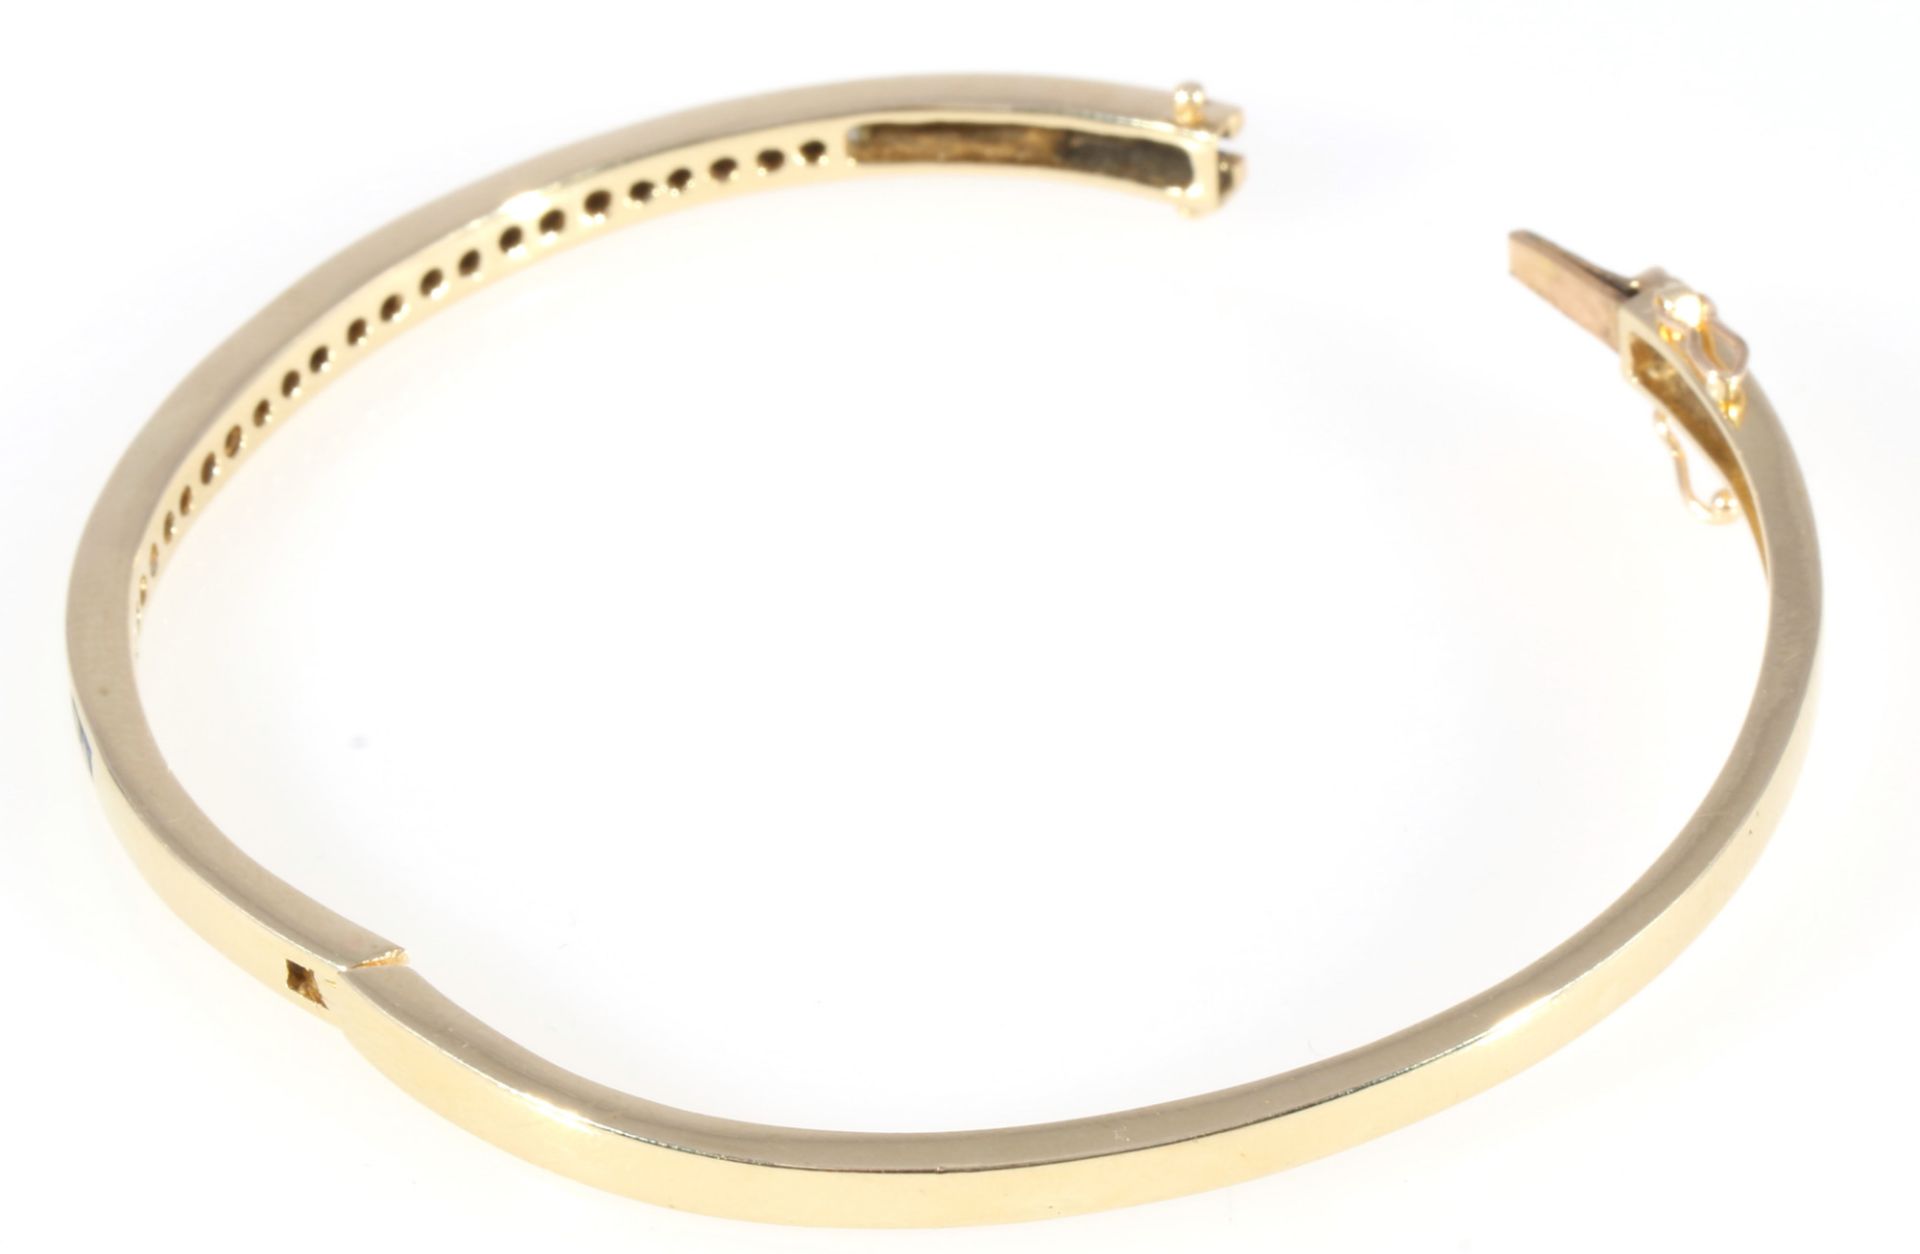 585 Gold Armreif mit Brillanten und Saphiren, 14K gold bracelet with diamonds and sapphires, - Image 3 of 4